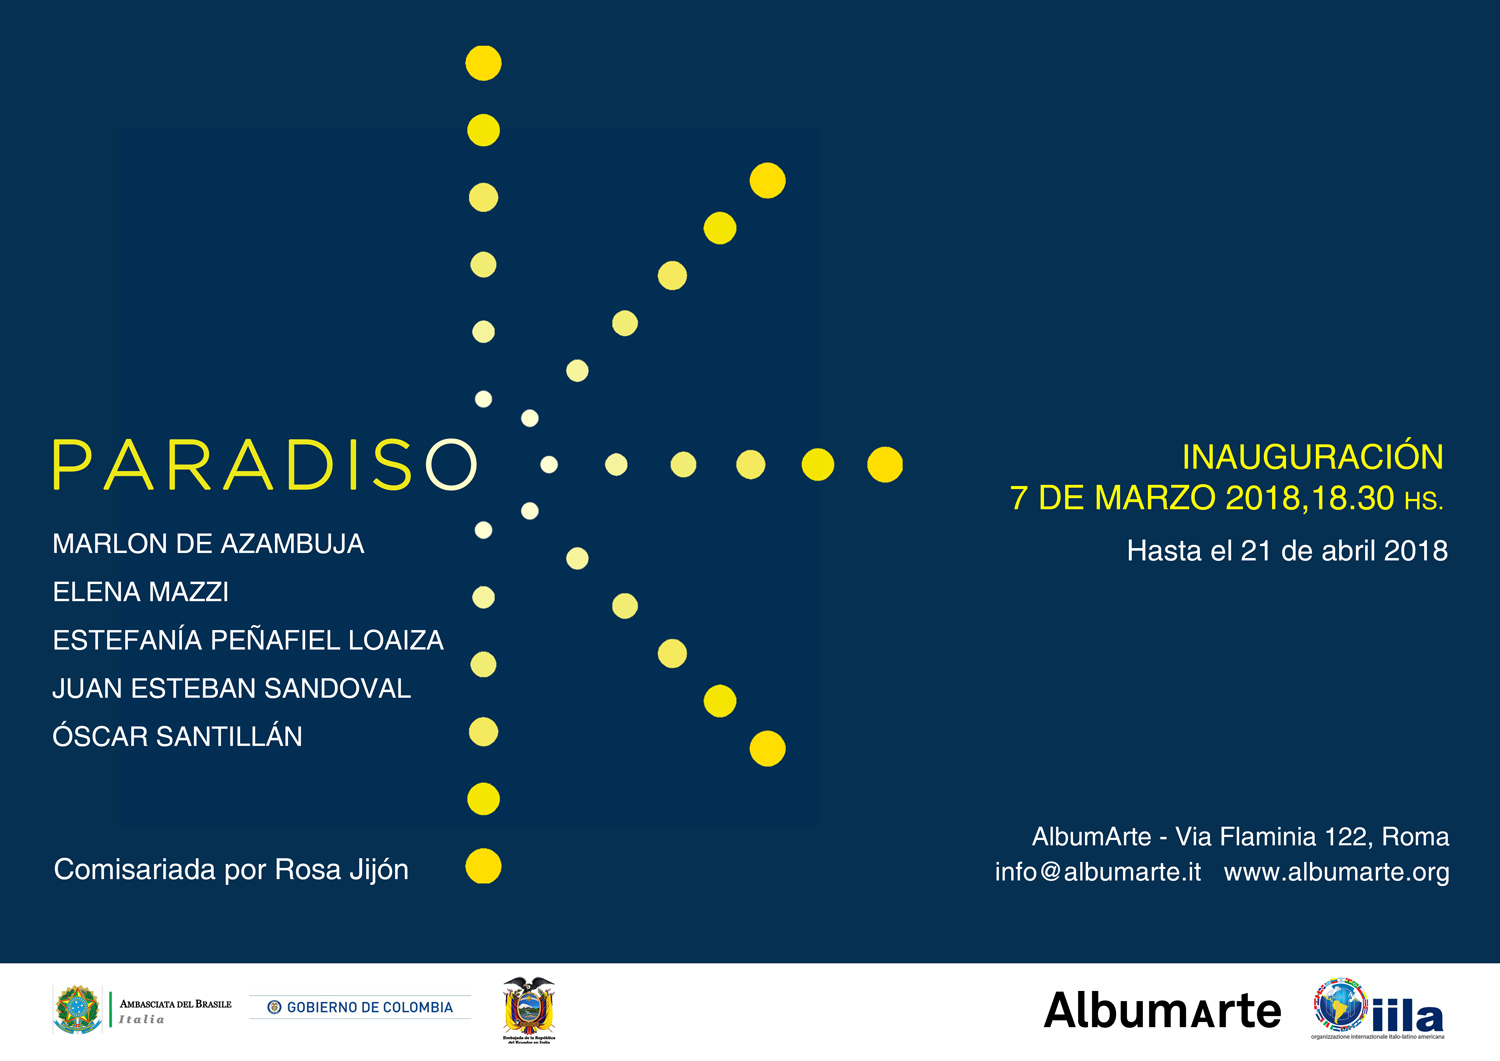 AlbumArte-PARADISO-7-de-mar2018 invitacion